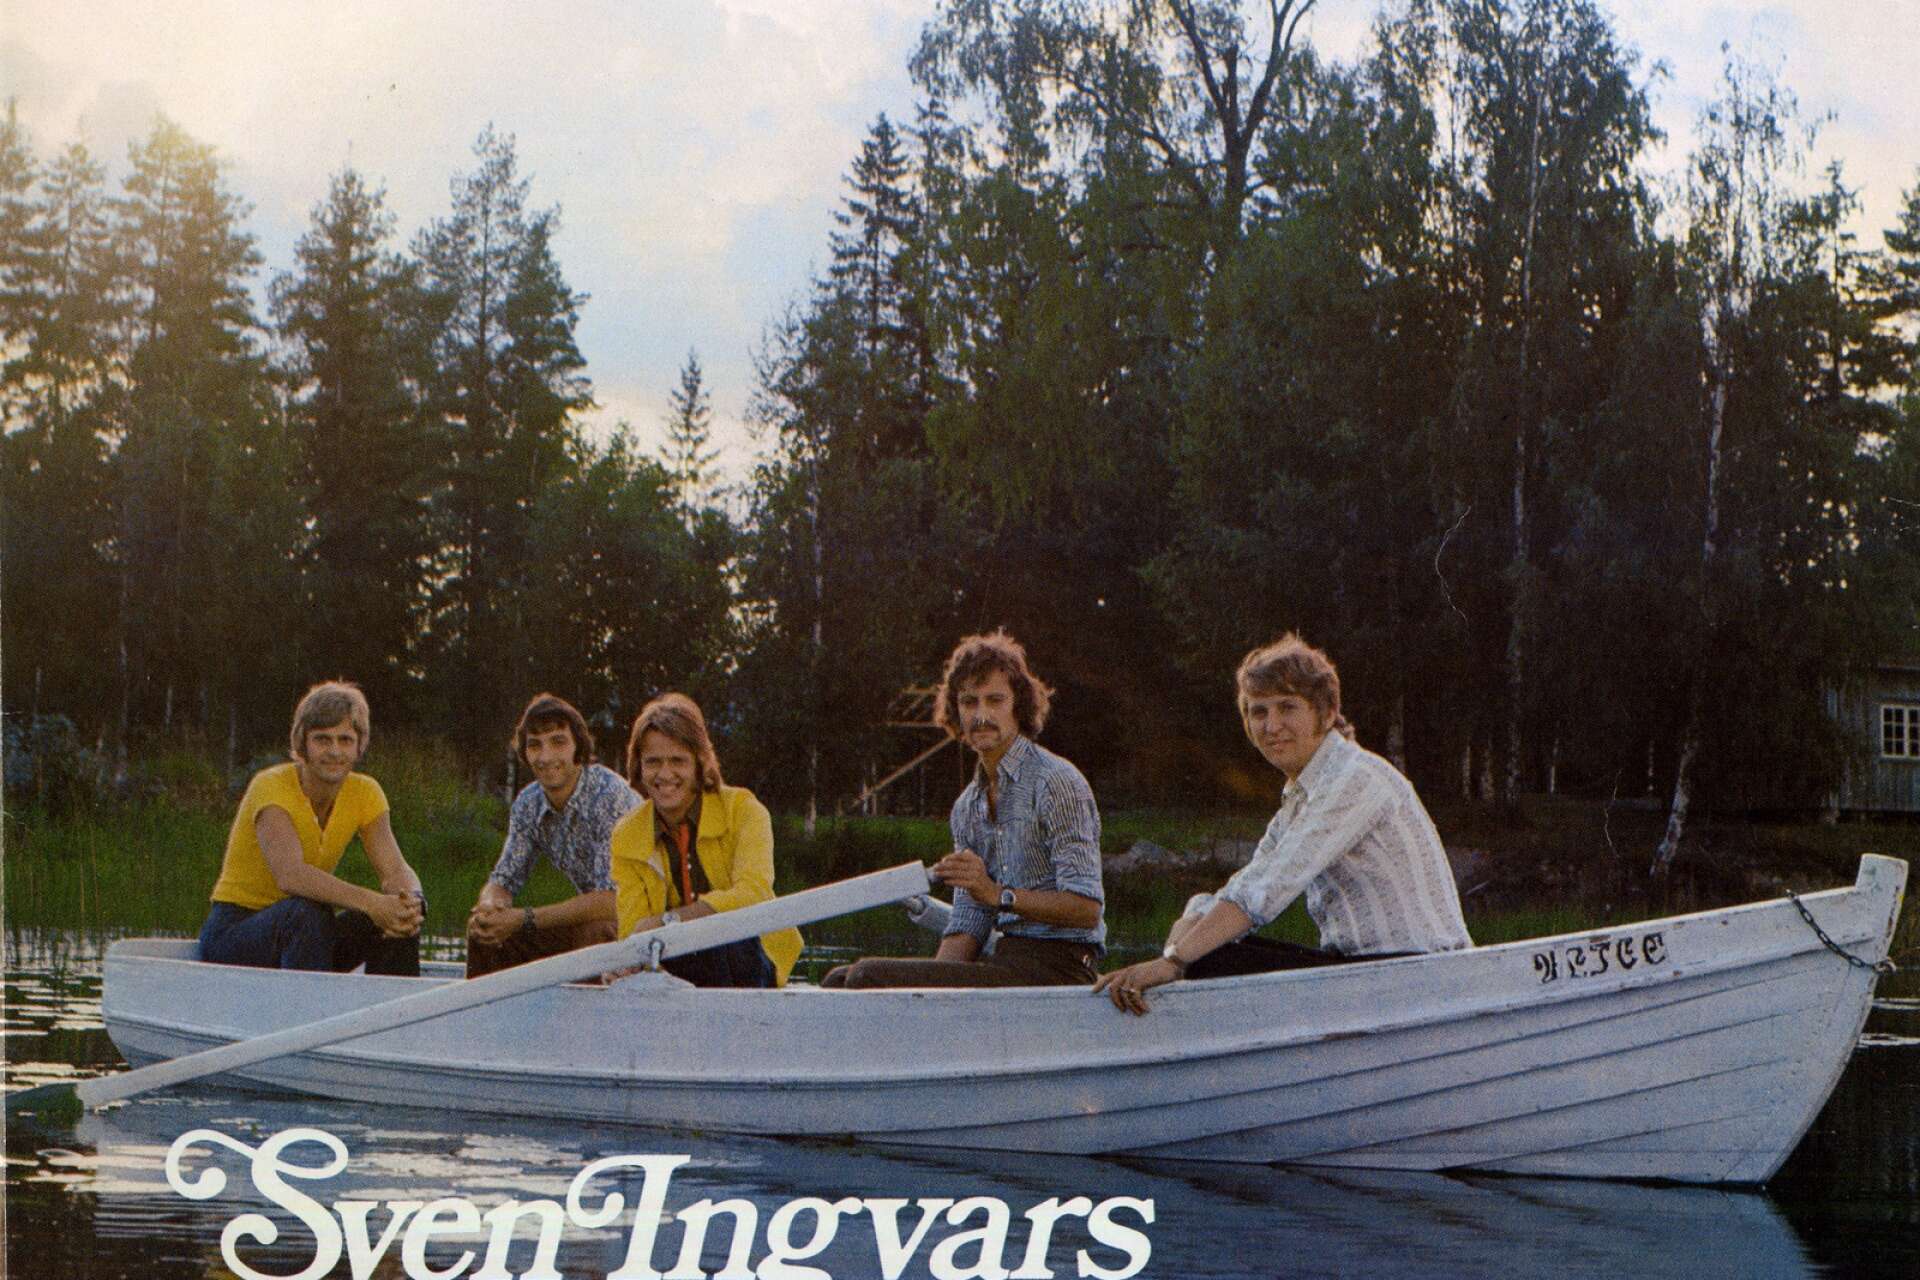 Sven-Ingvars i Frödingland är ett klassiskt album där två värmländska storheter möttes. 1971 kom skivan där Sven-Ingvars tolkar Fröding och musiken nådde ända till skogen utanför Umeå.